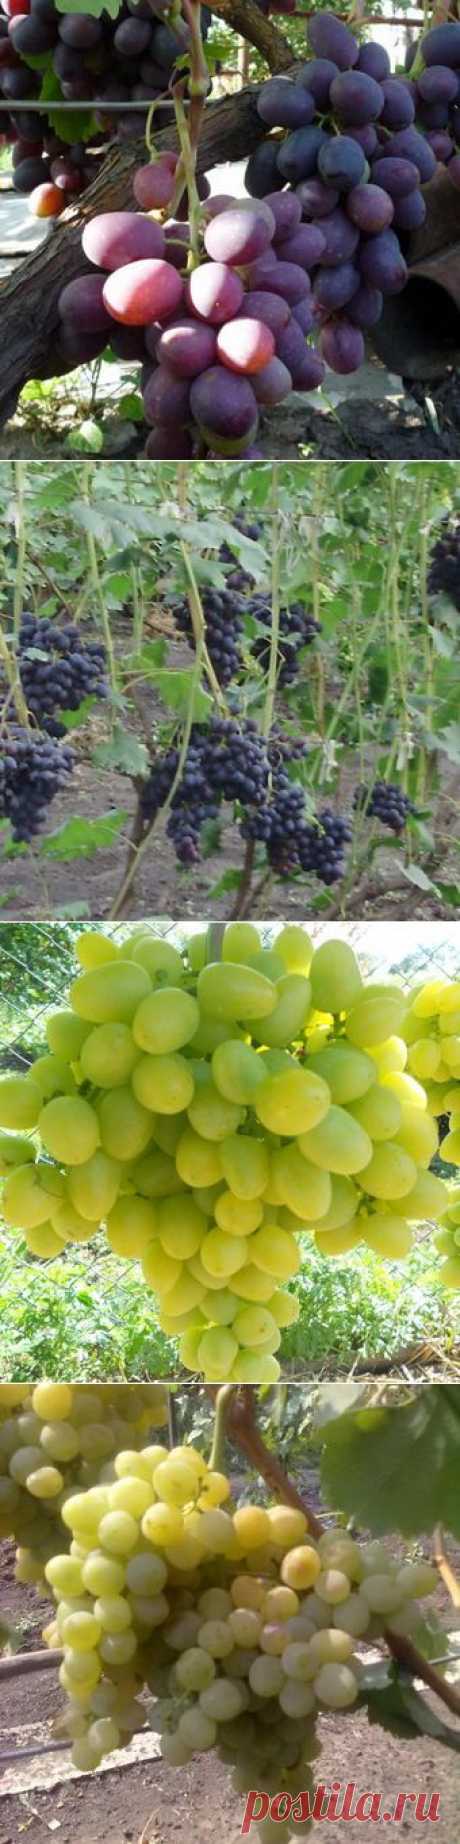 Сорта винограда с фото и описанием: какие бывают ранние, средние и поздние сорта винограда